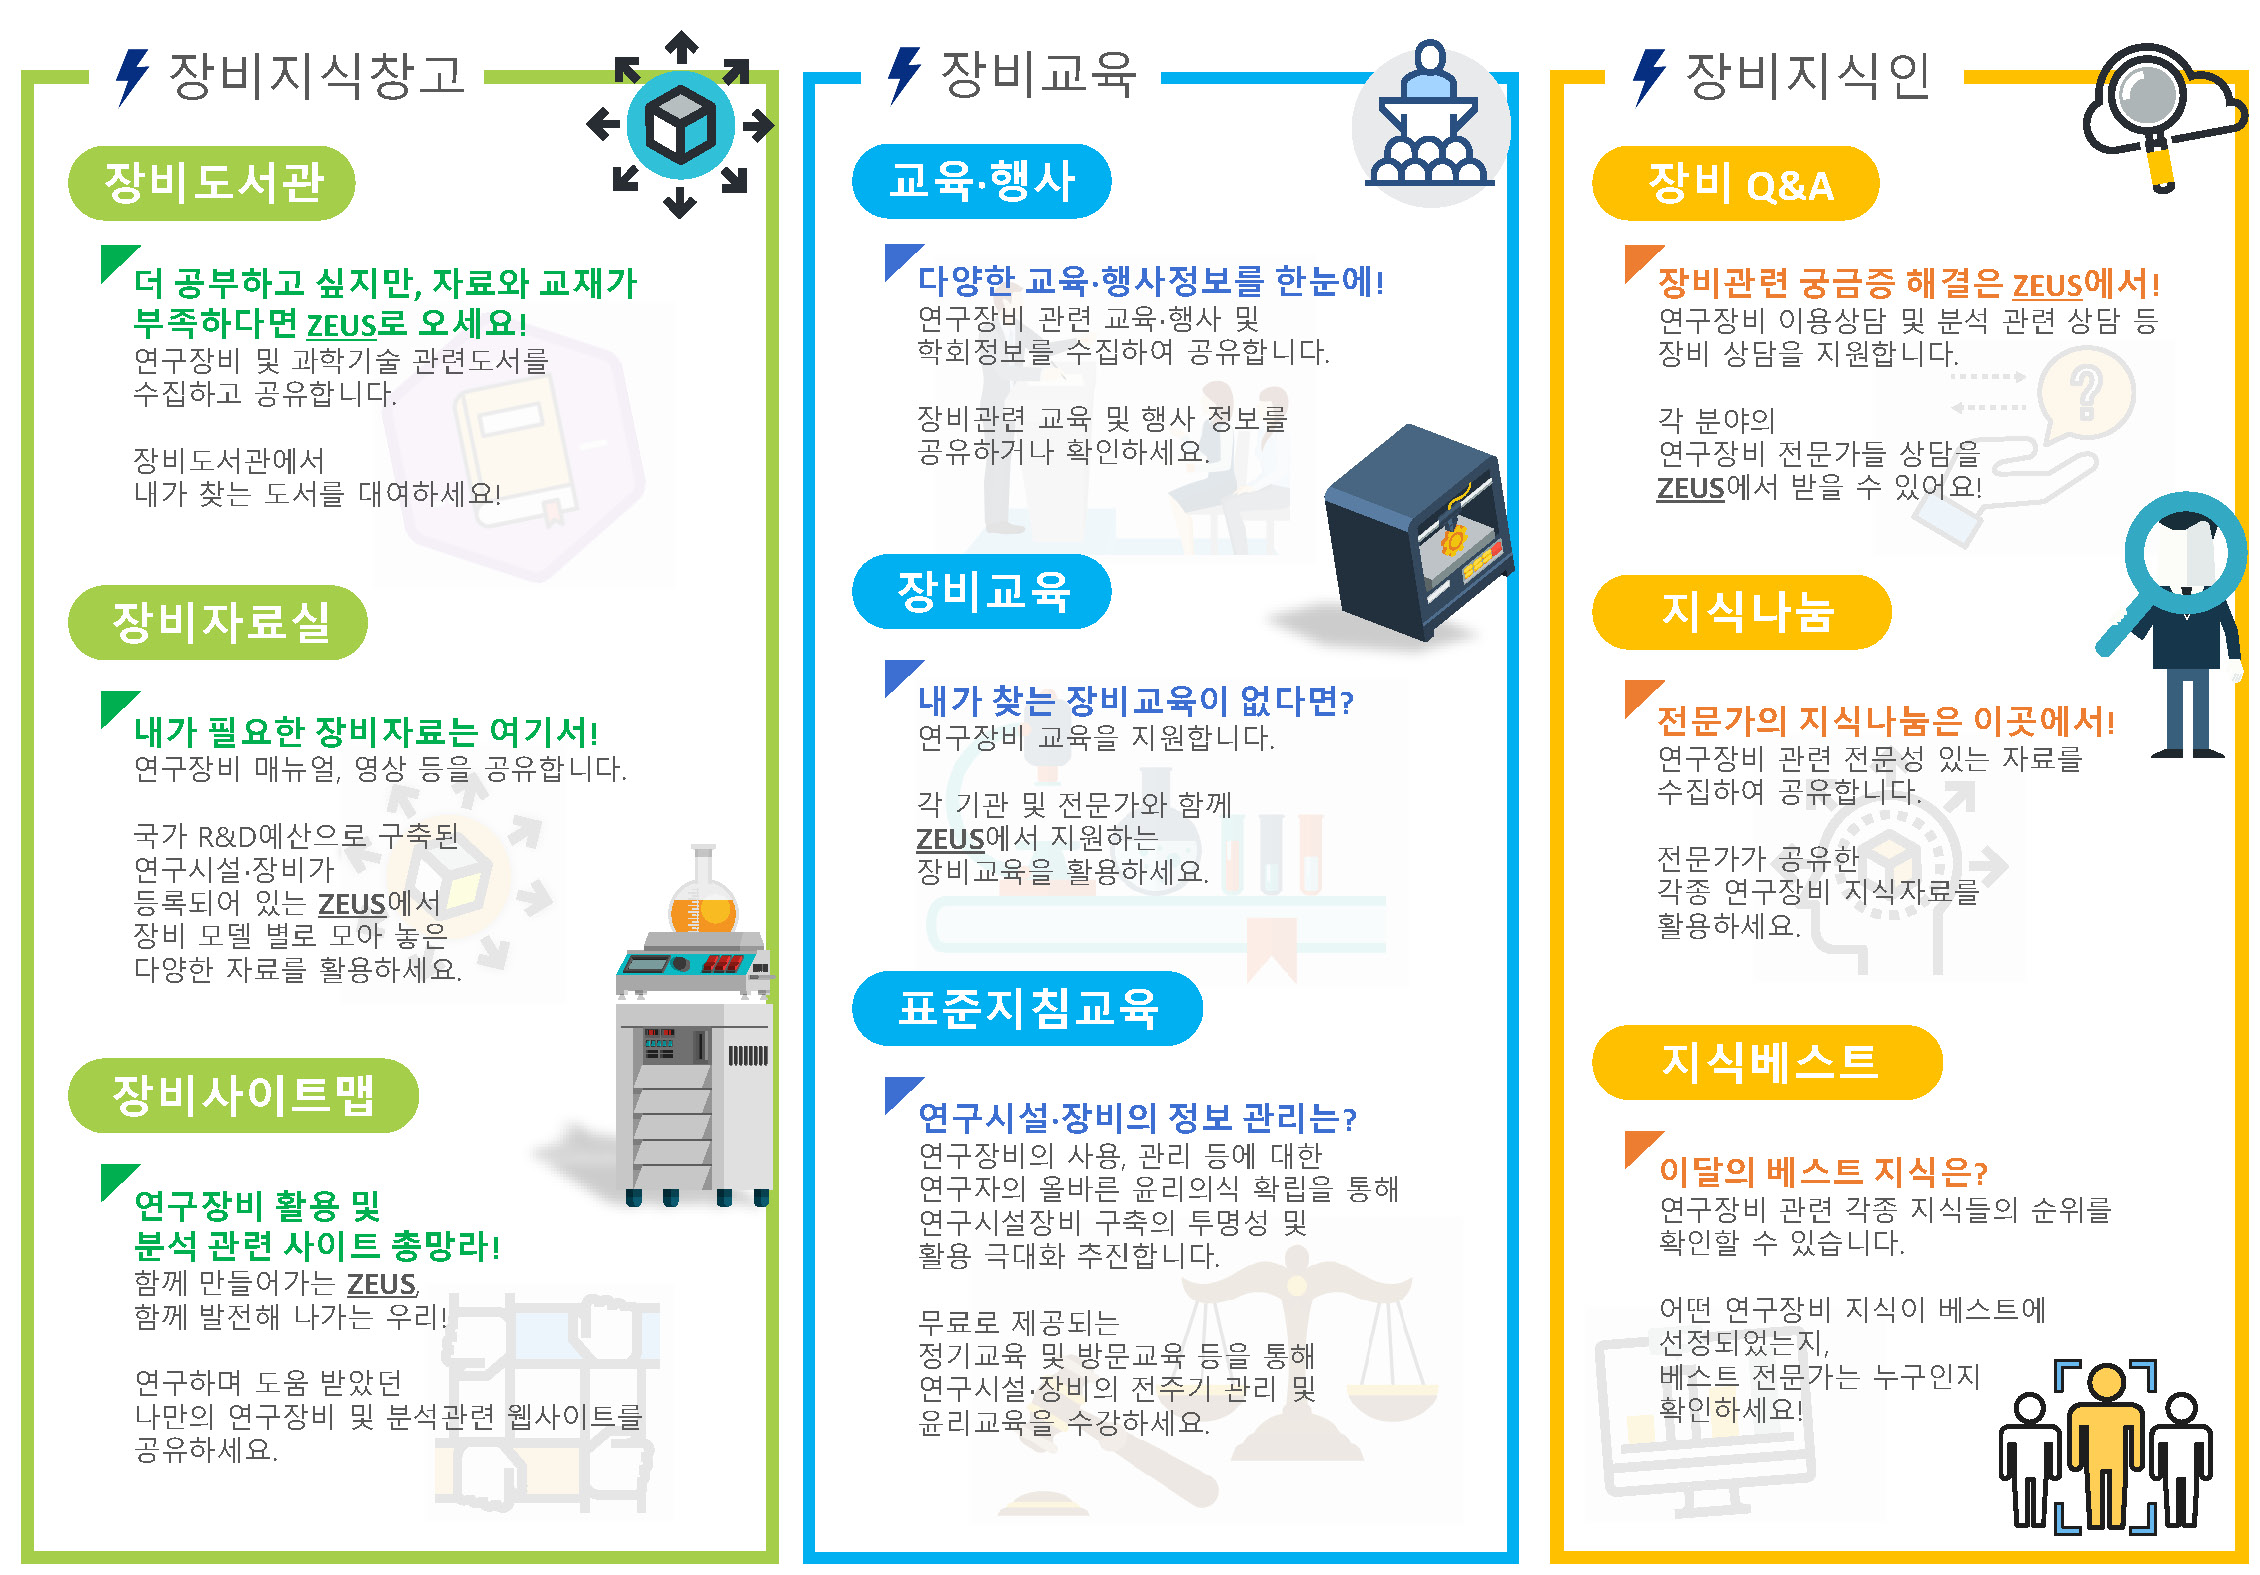 한국기초과학지원연구원(원장 신형식, 이하 KBSI)은 연구장비 지식자료와 교육정보 콘텐츠 등을 통합 제공하는 ‘범부처 연구장비지식 온라인 통합서비스’를 4월 9일부터 개시한다.